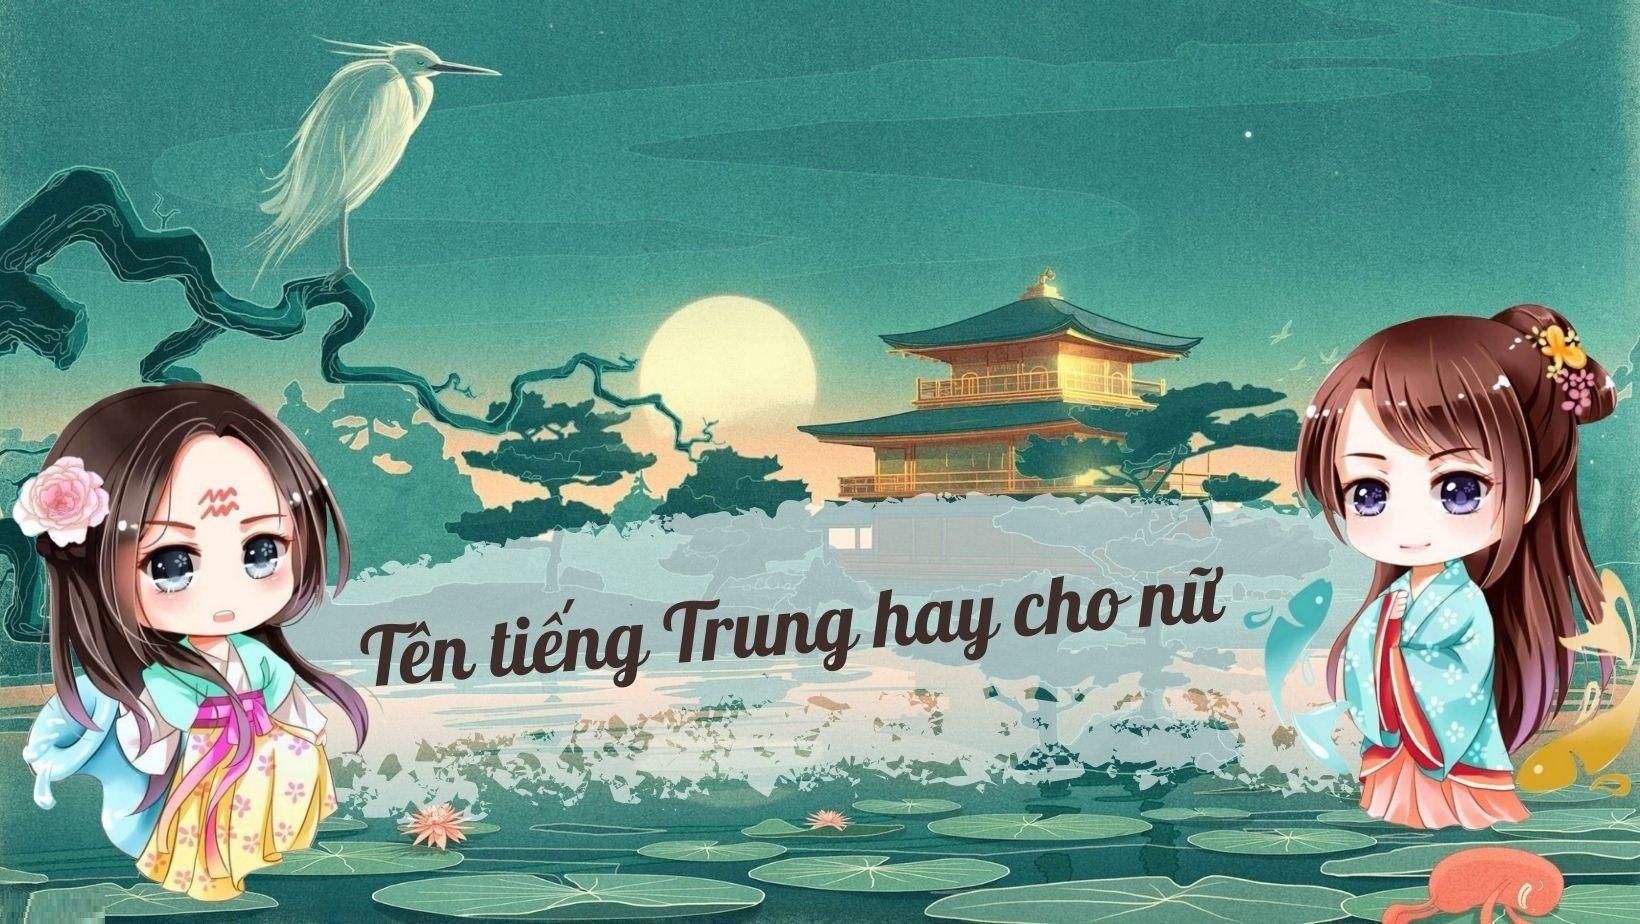 100+ tên tiếng Trung hay cho nữ vừa ý nghĩa lại vừa độc đáo - BlogAnChoi